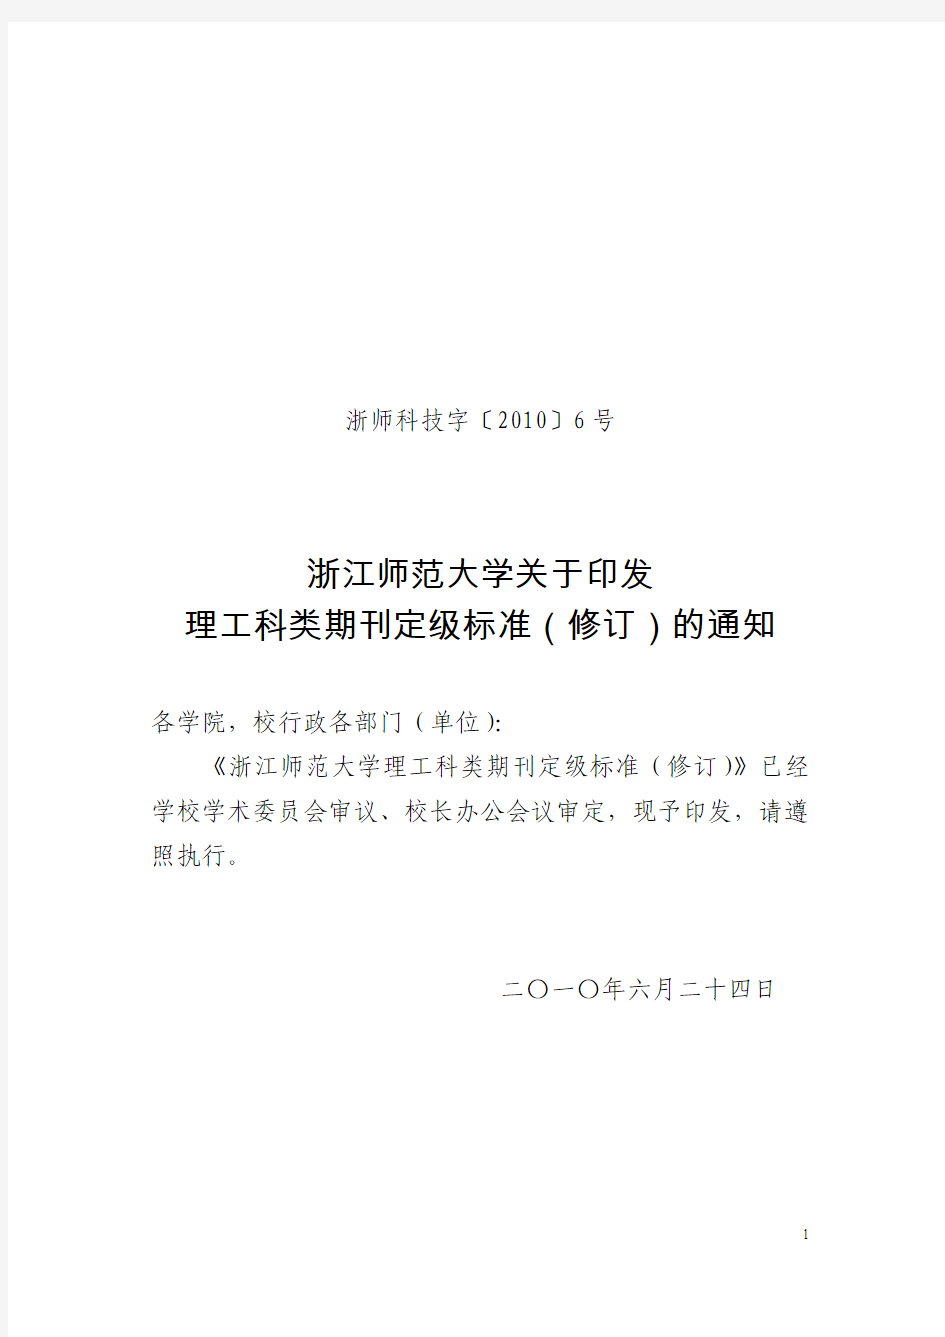 《浙江师范大学理工科类期刊定级标准》(2010版)